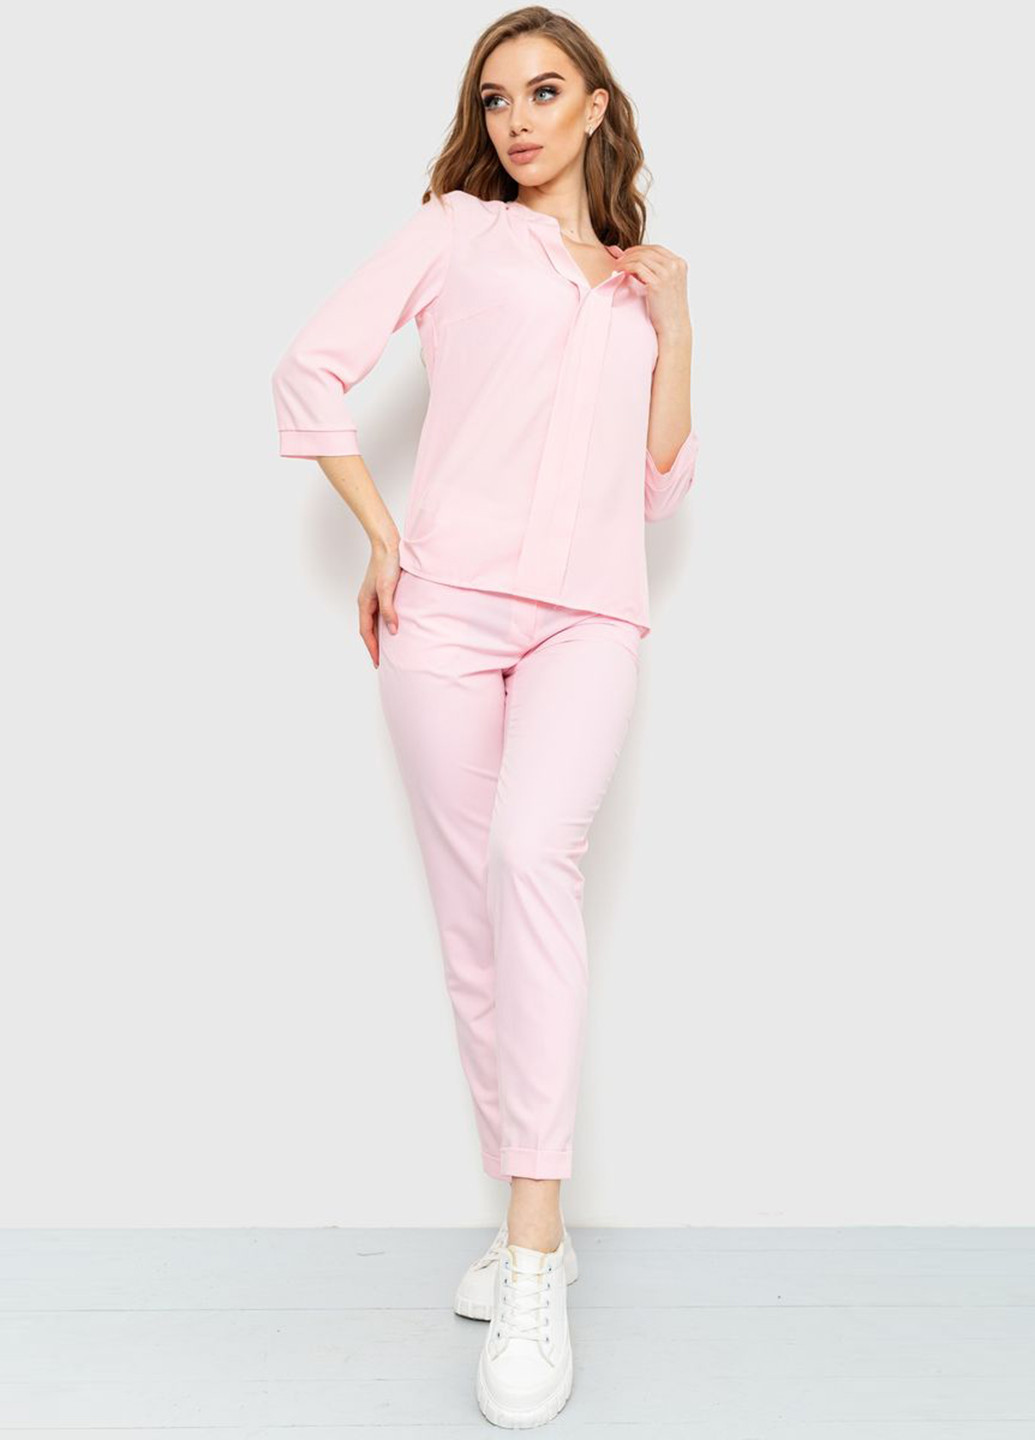 Светло-розовая летняя блуза Ager